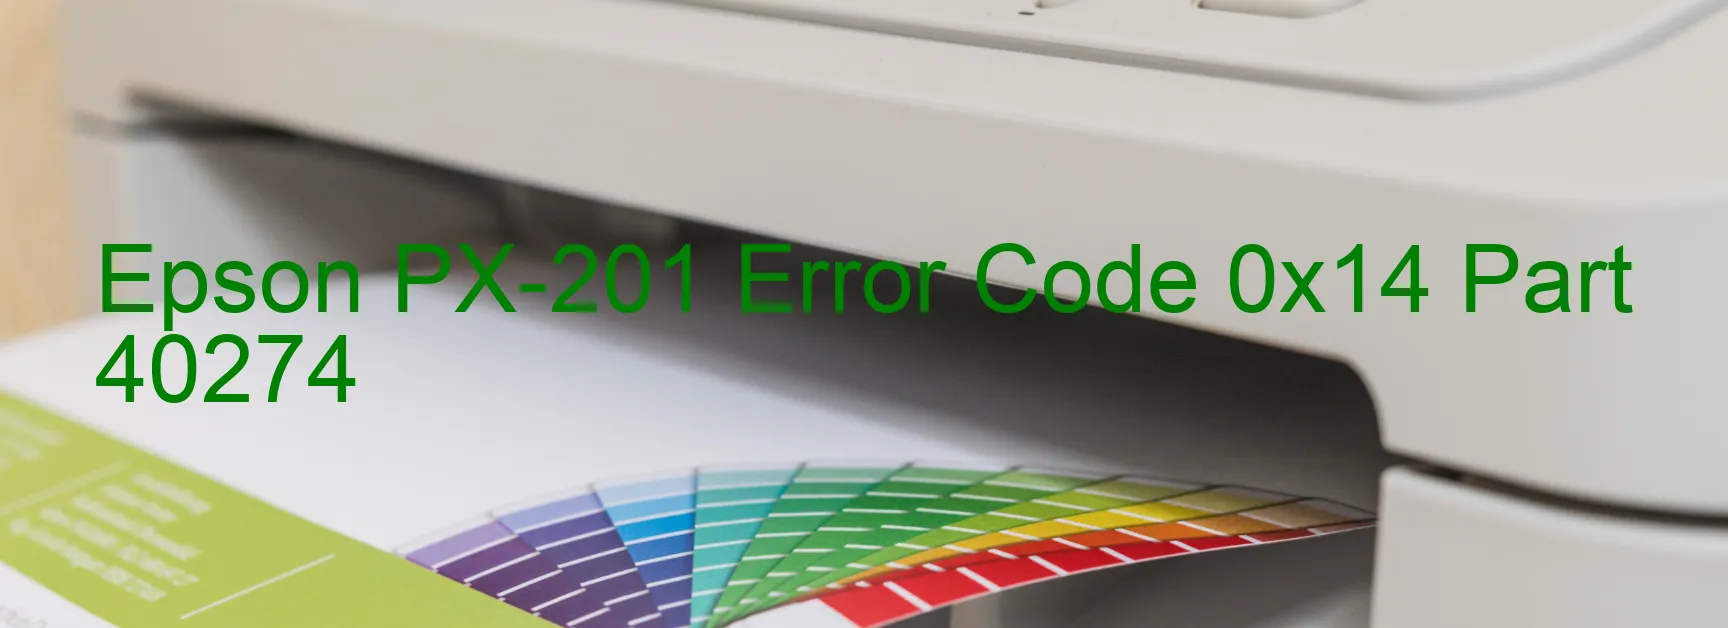 Epson PX-201 Error Code 0x14 Part 40274